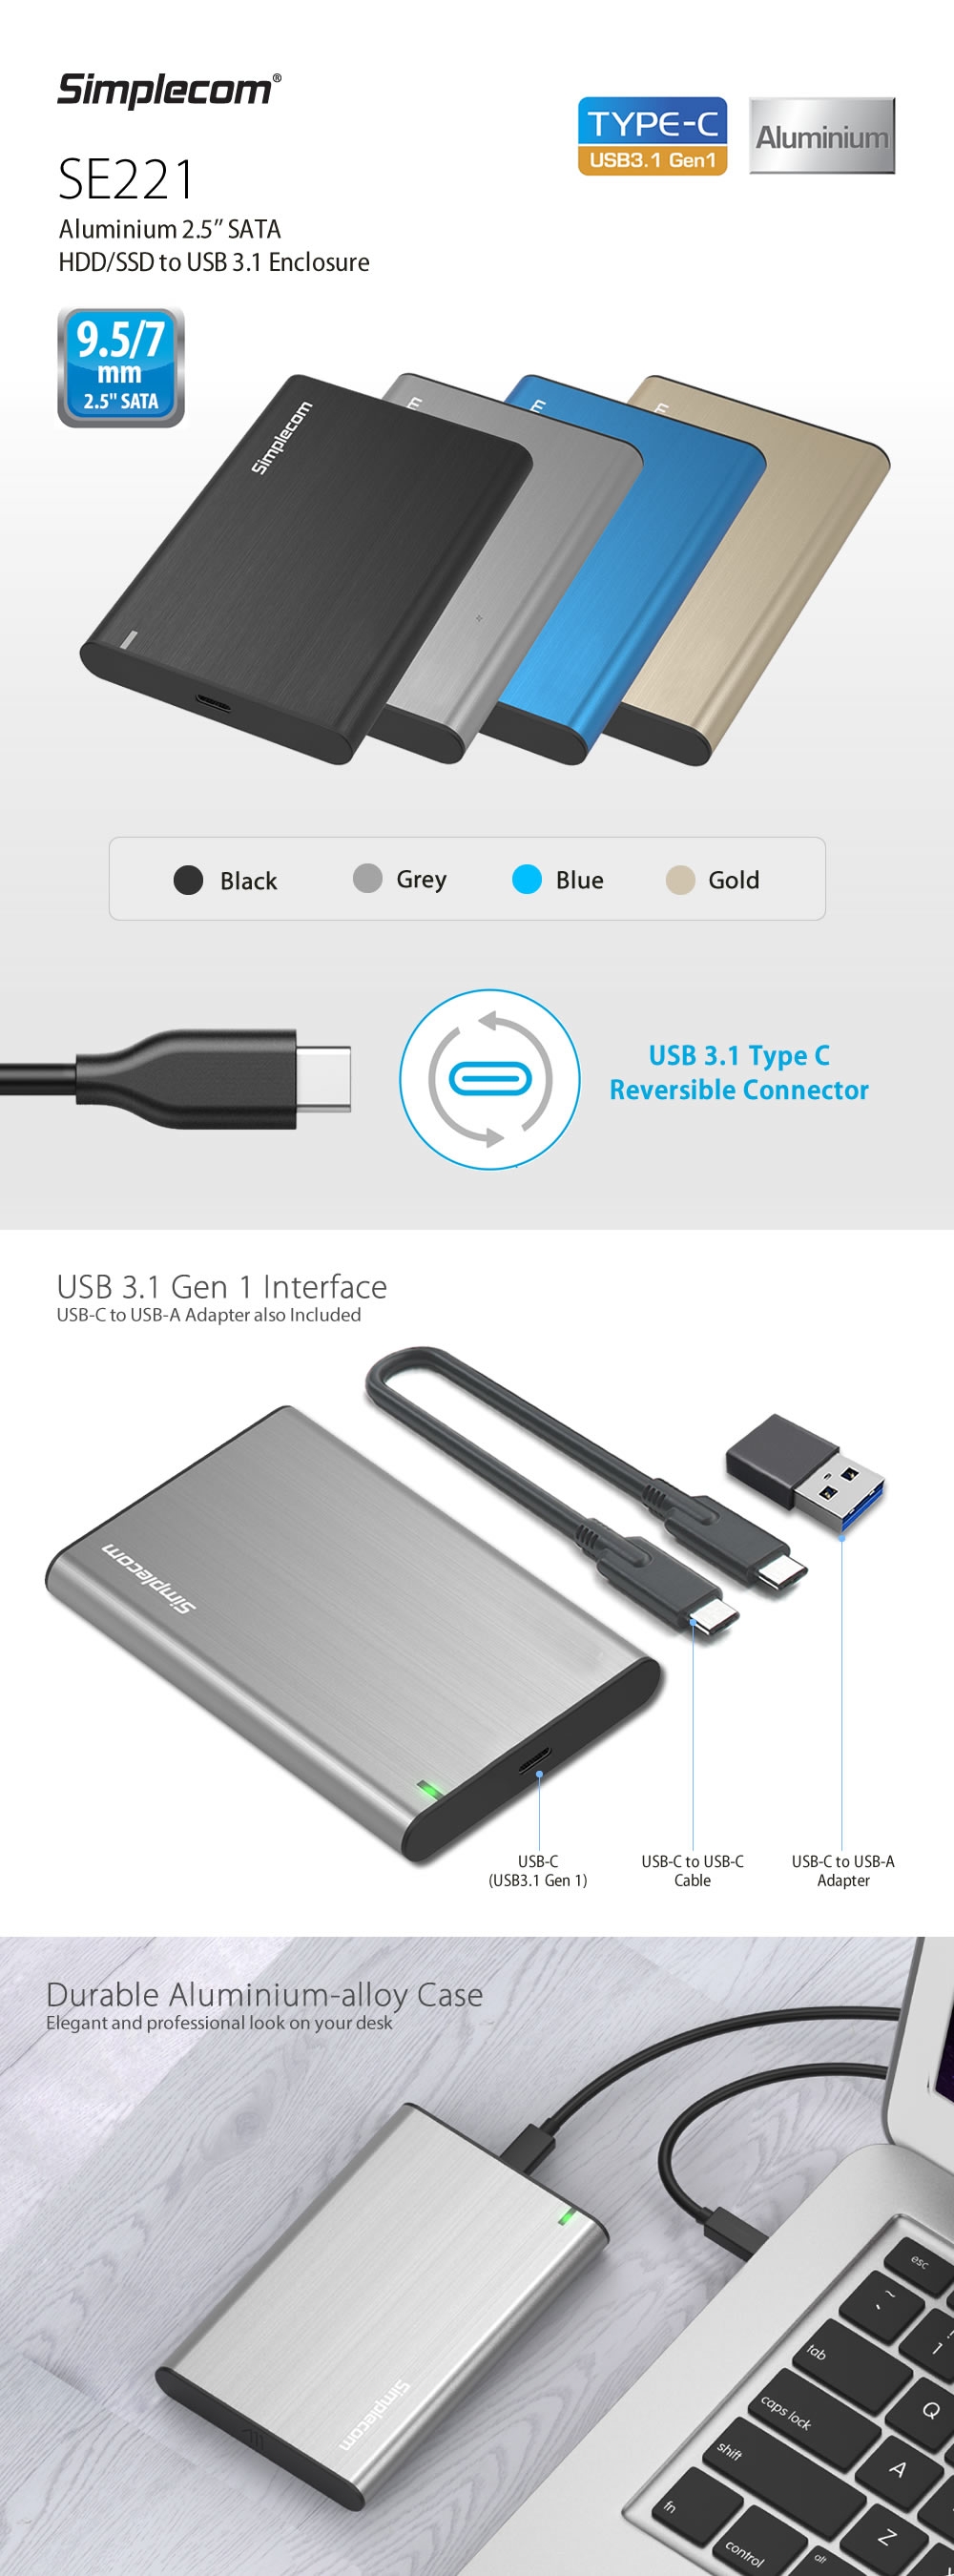 Simplecom SE221 Aluminium 2.5'' SATA HDD/SSD to USB 3.1 Enclosure Gold 1